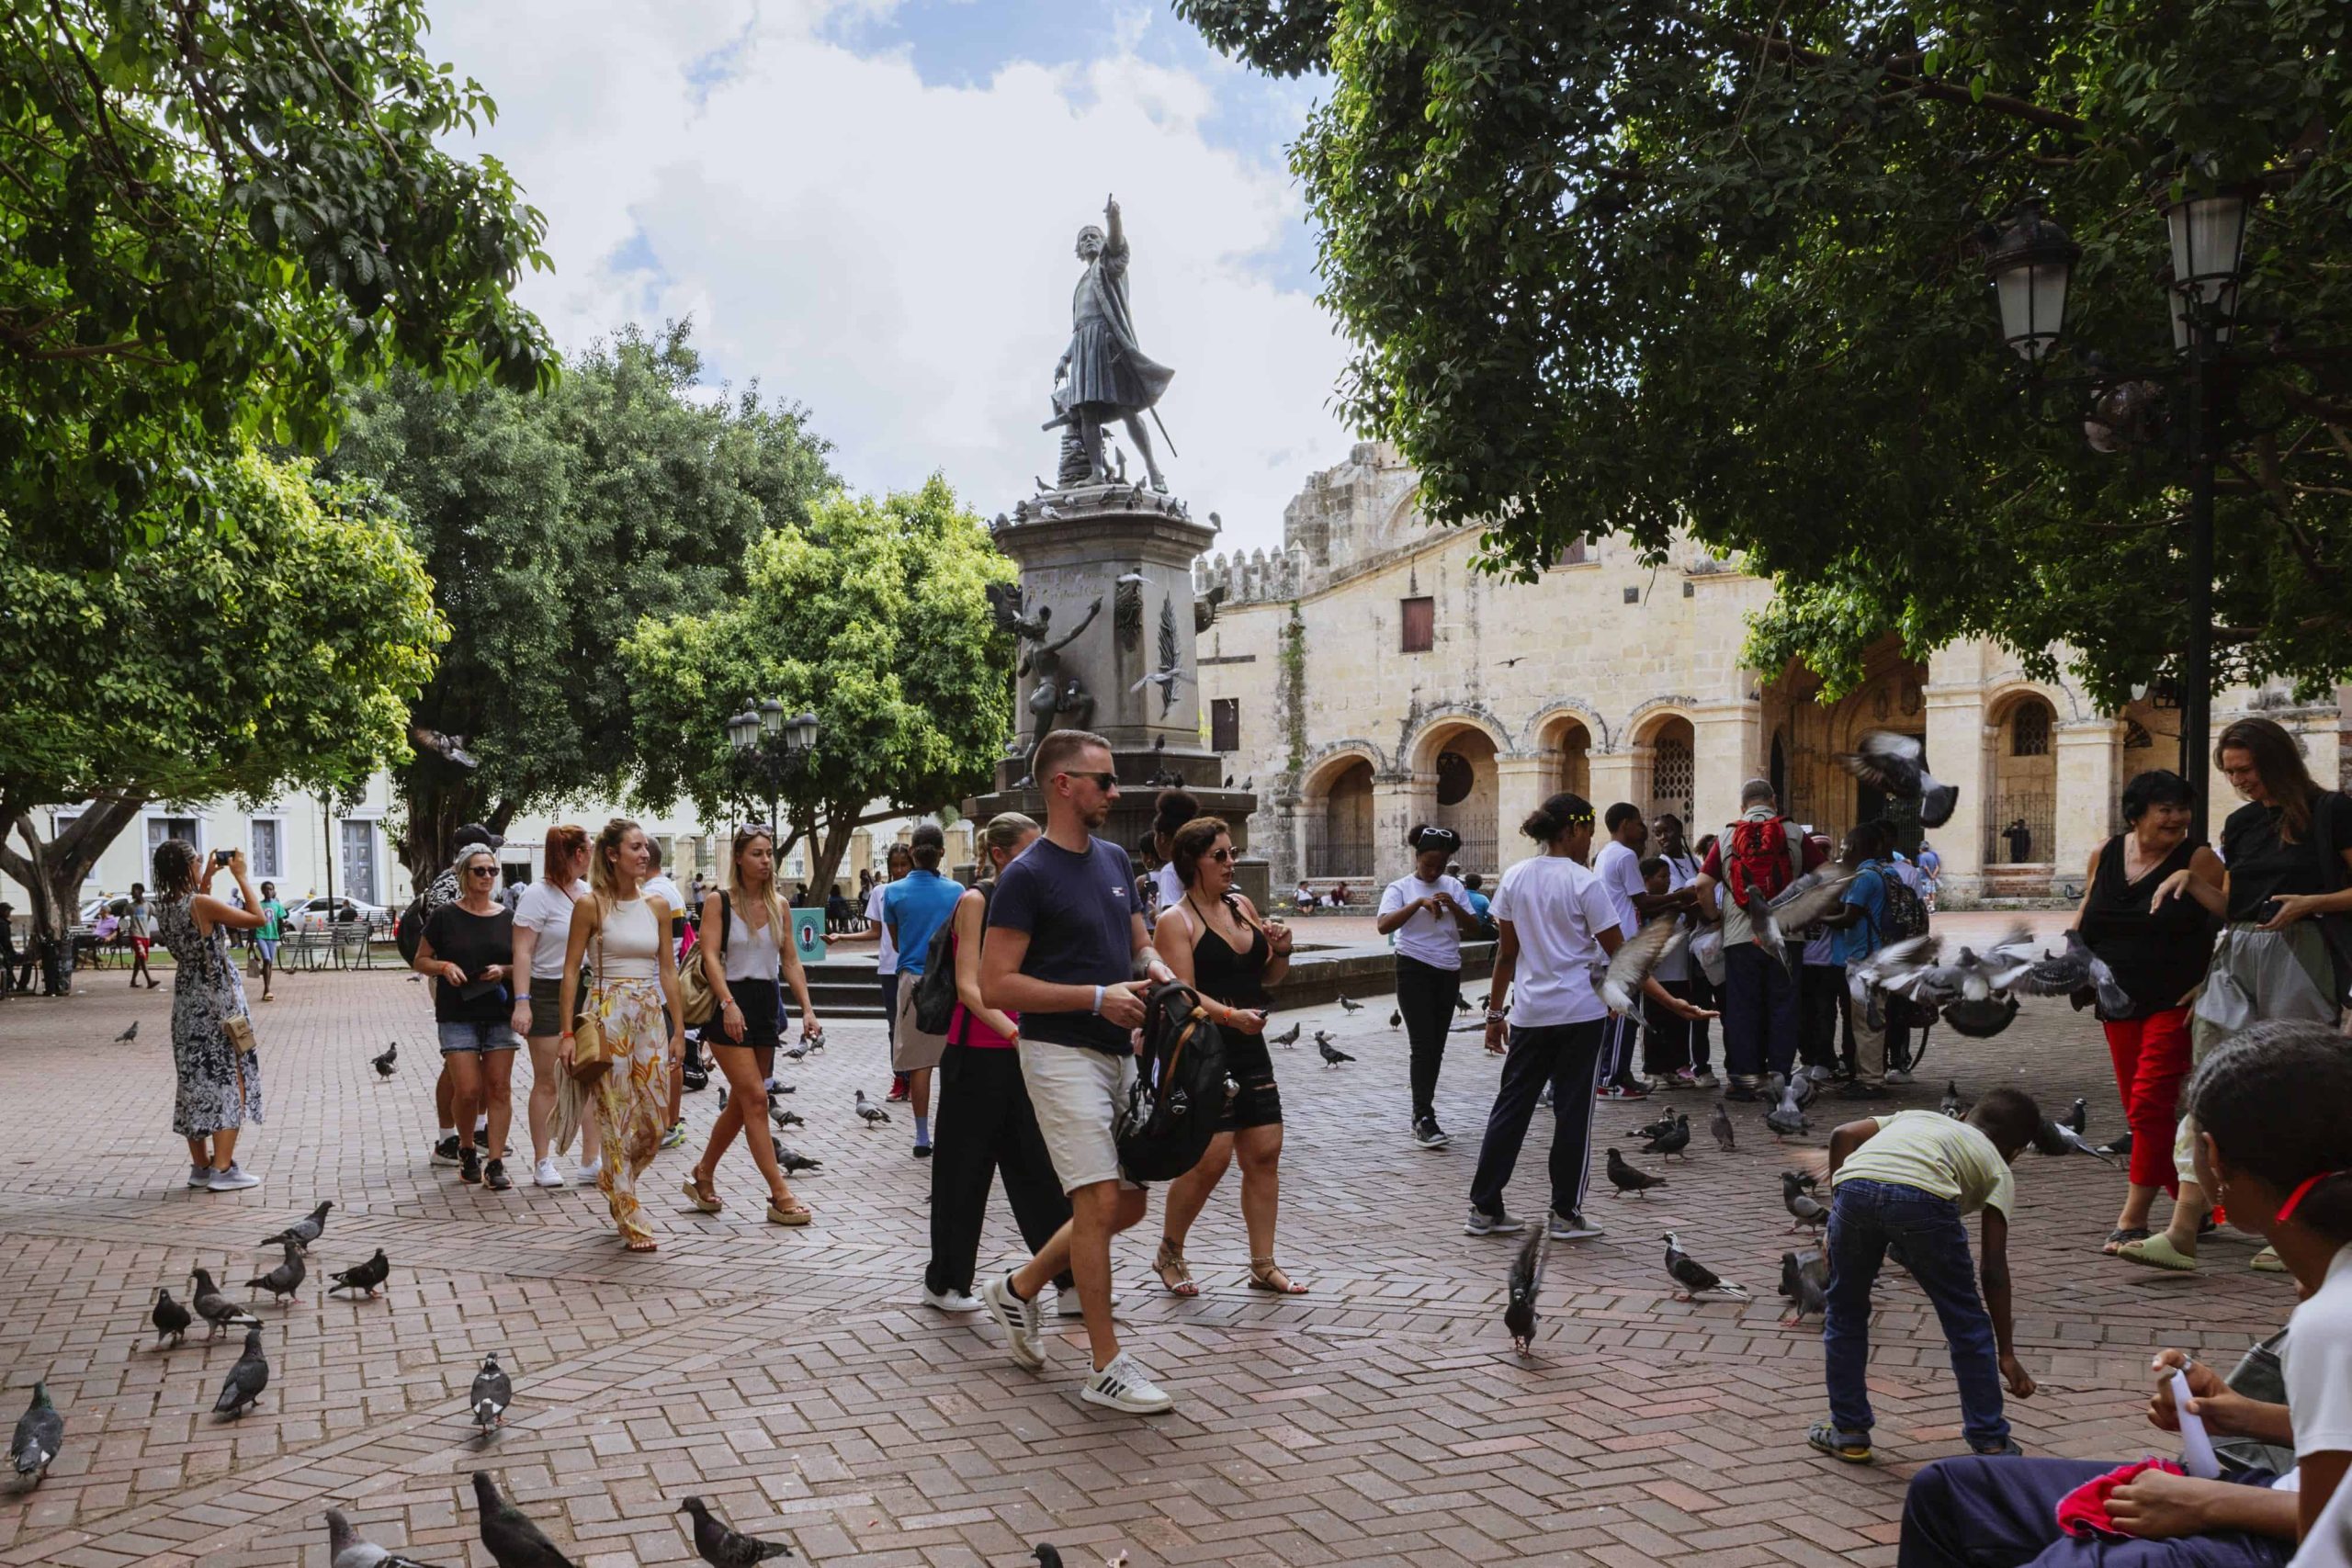 El turismo aporta unos US$31.4 millones diarios a la economía dominicana, según el gobierno